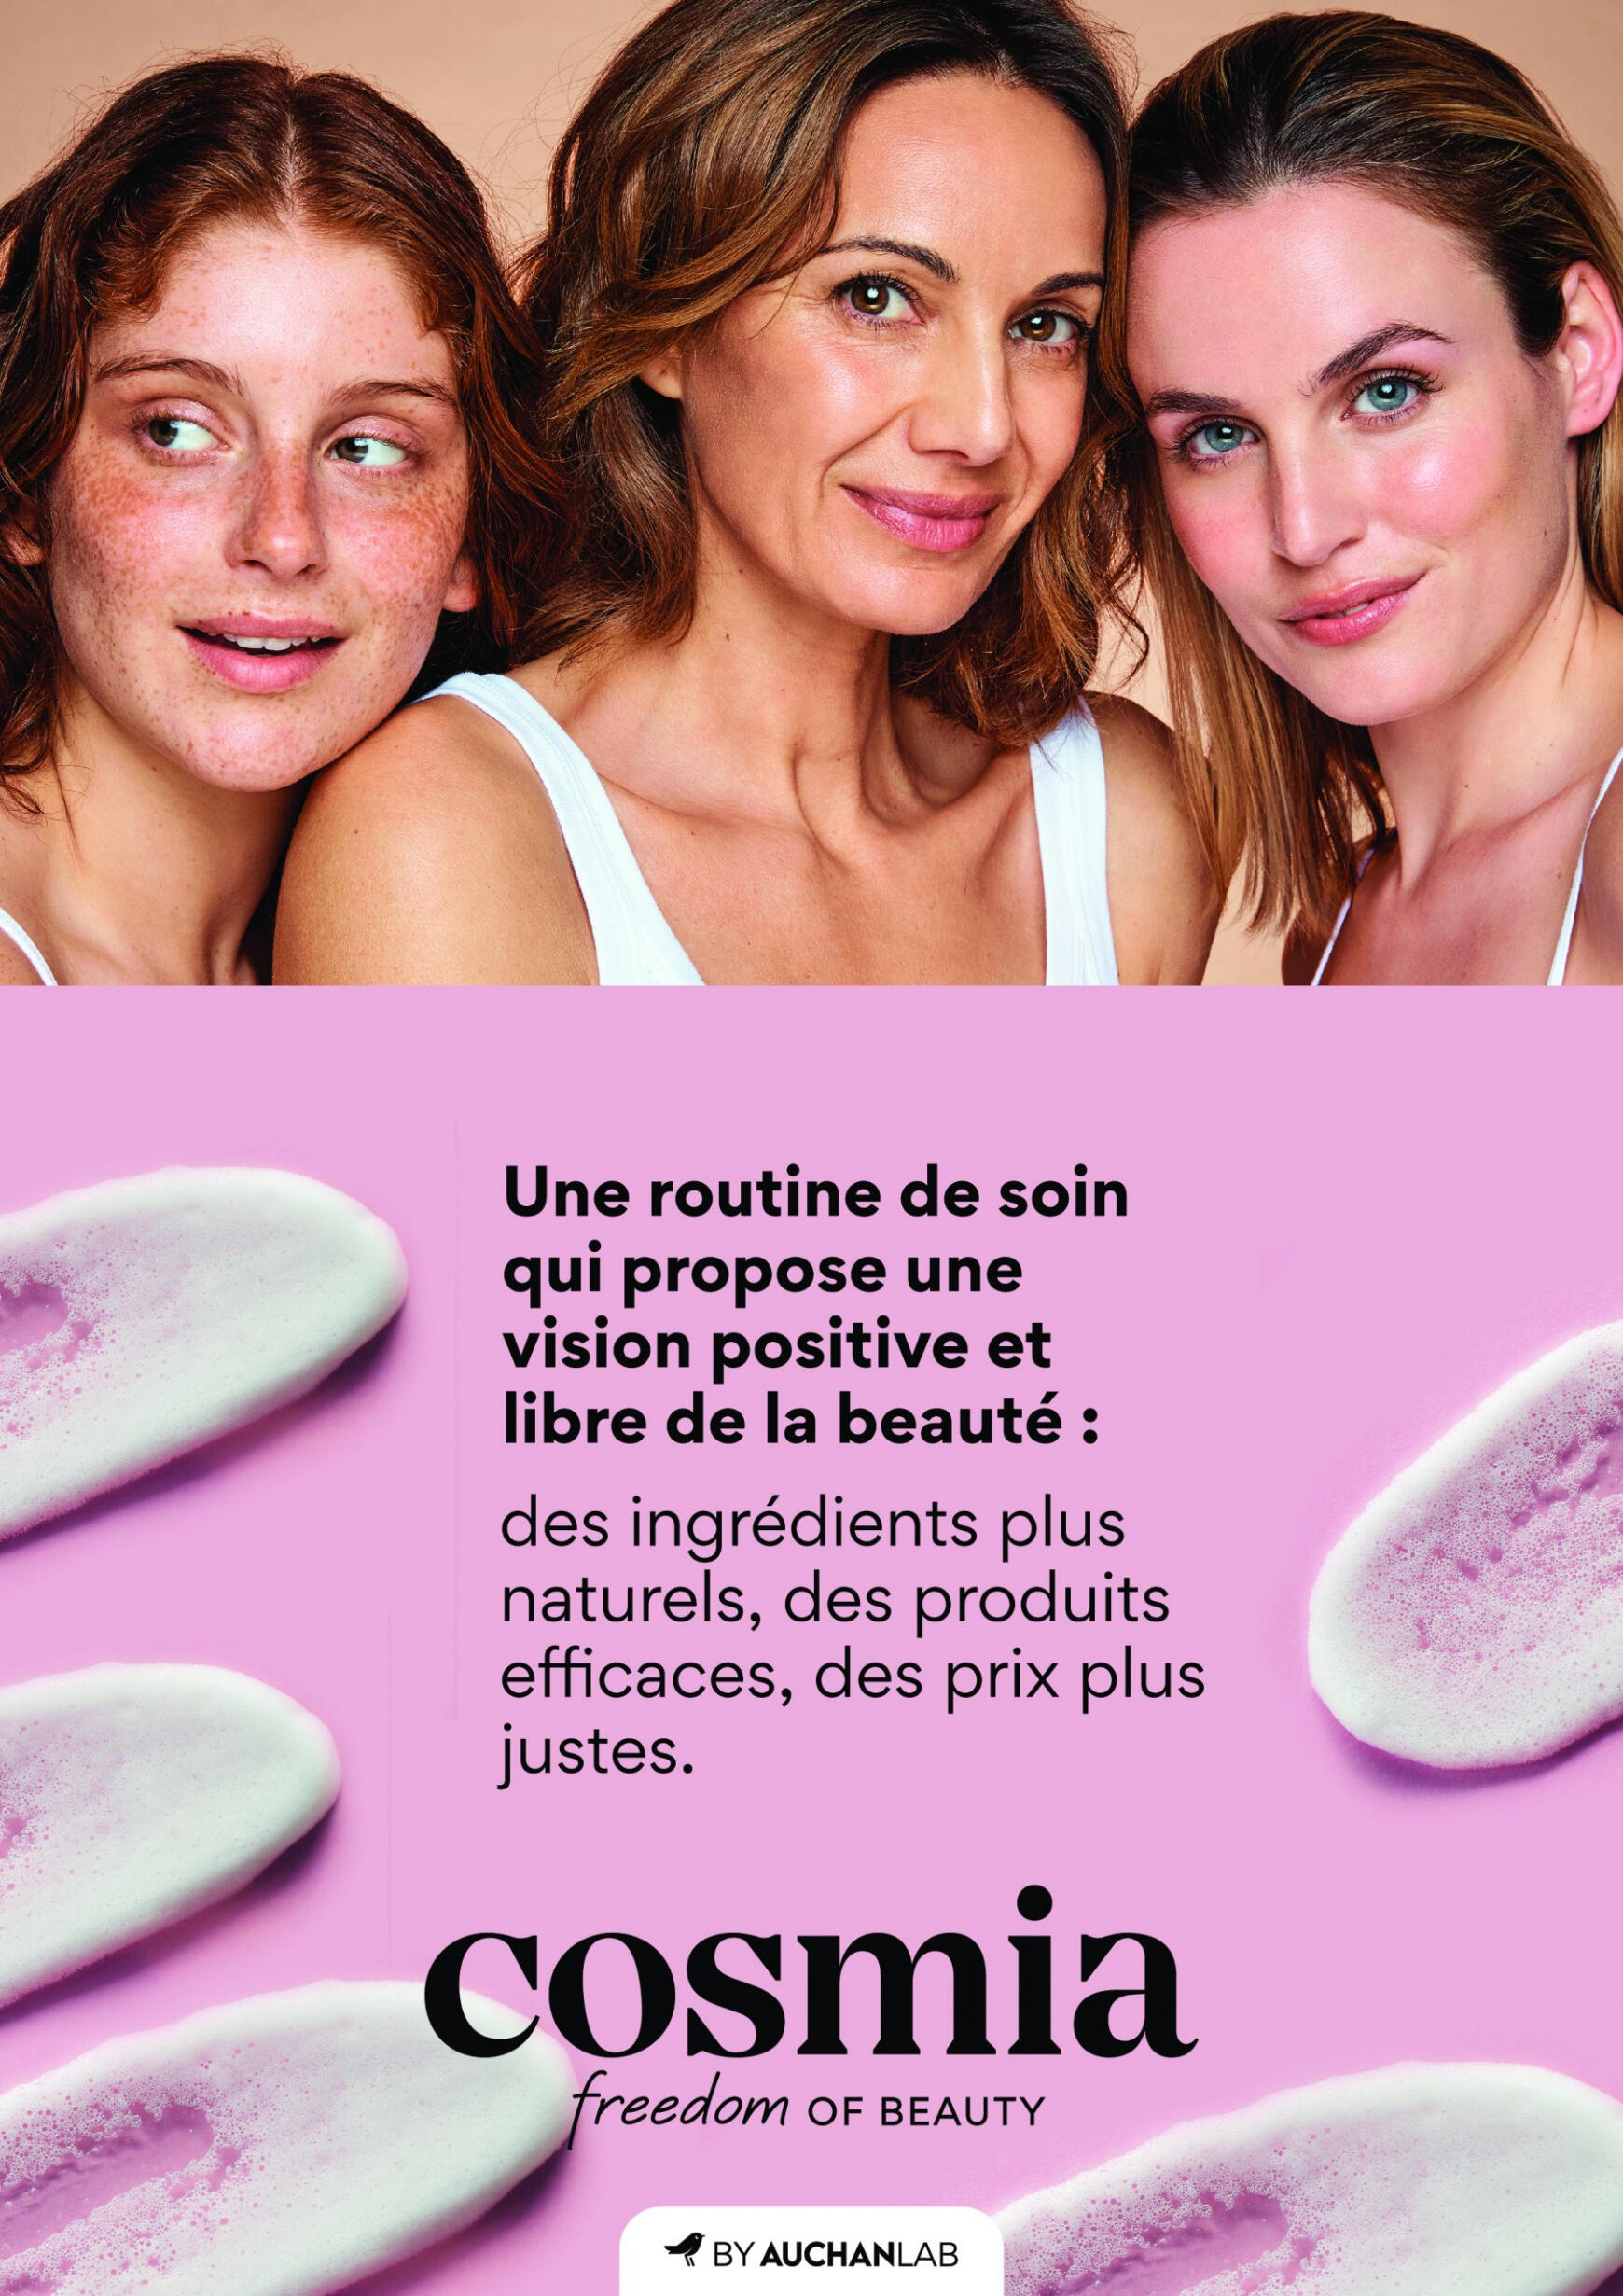 auchan - Auchan - Découvrez nos dernières nouveautés Cosmia folder huidig 27.05. - 20.06. - page: 2